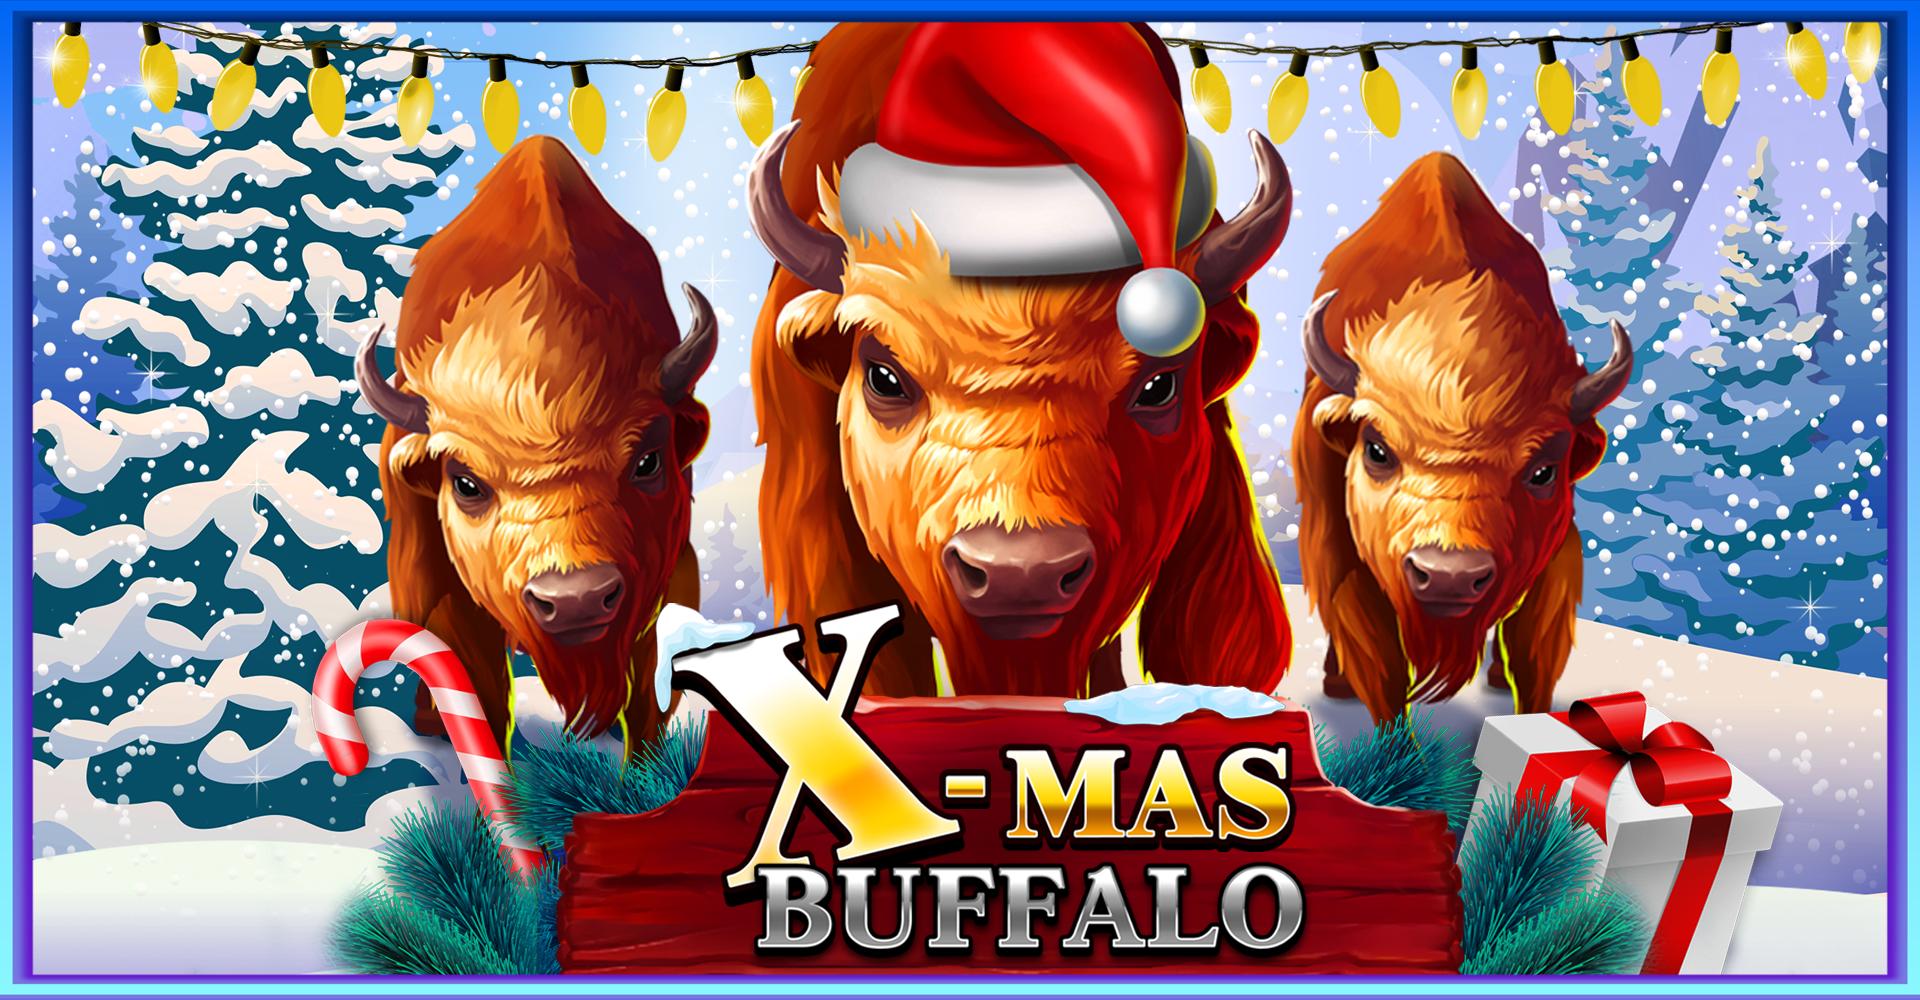 X-Mas Buffalo | Промо-материалы | Игровой автомат онлайн